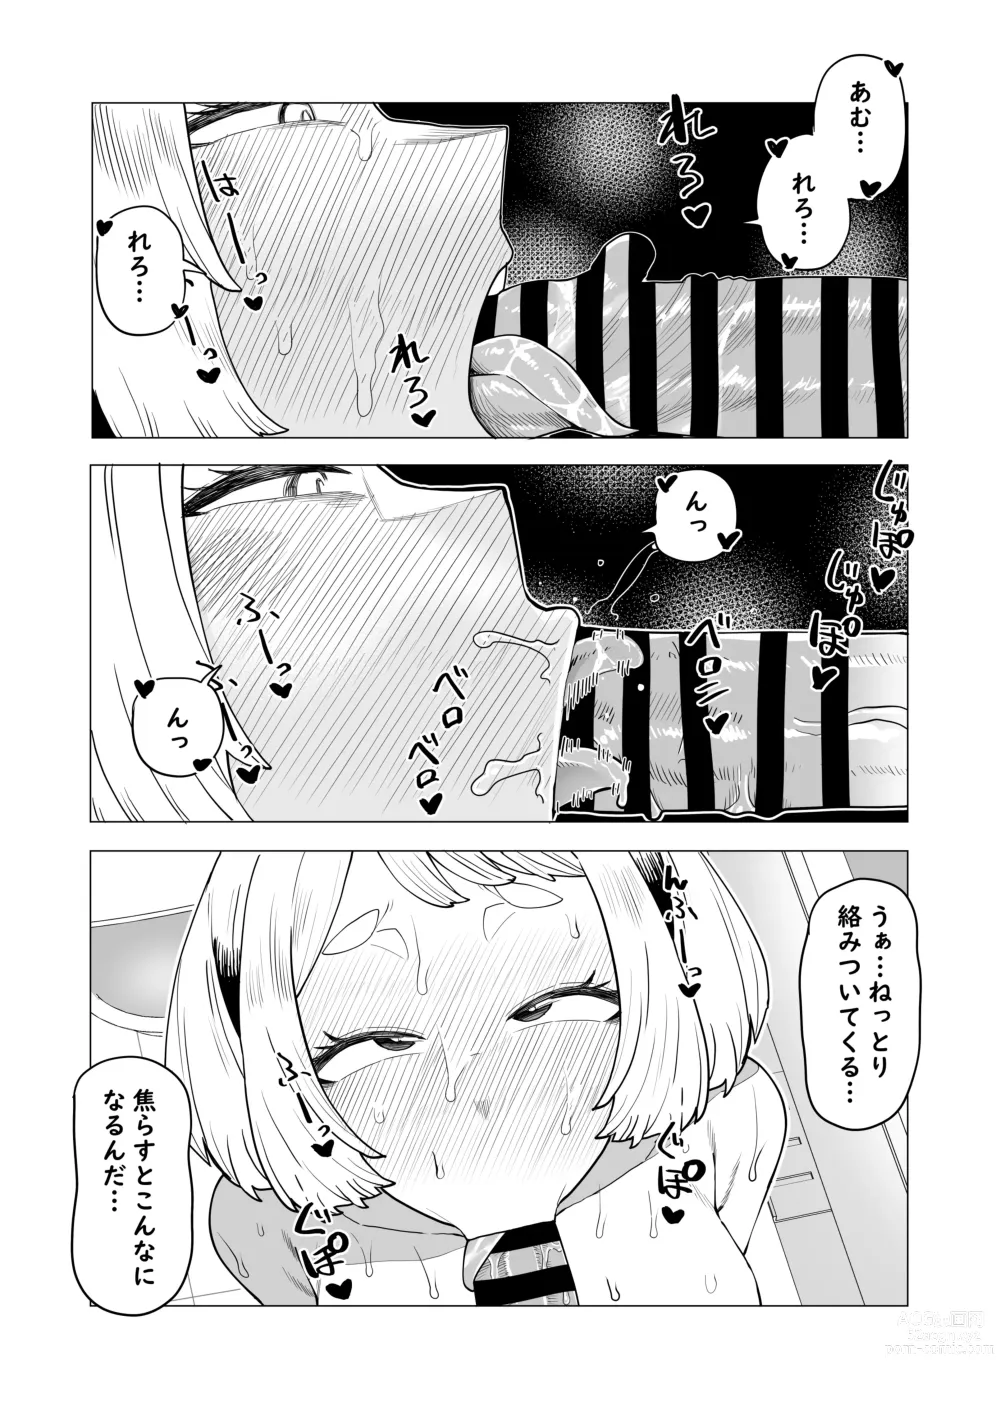 Page 5 of doujinshi Teisou Gyakuten Mono Ochako no Baai